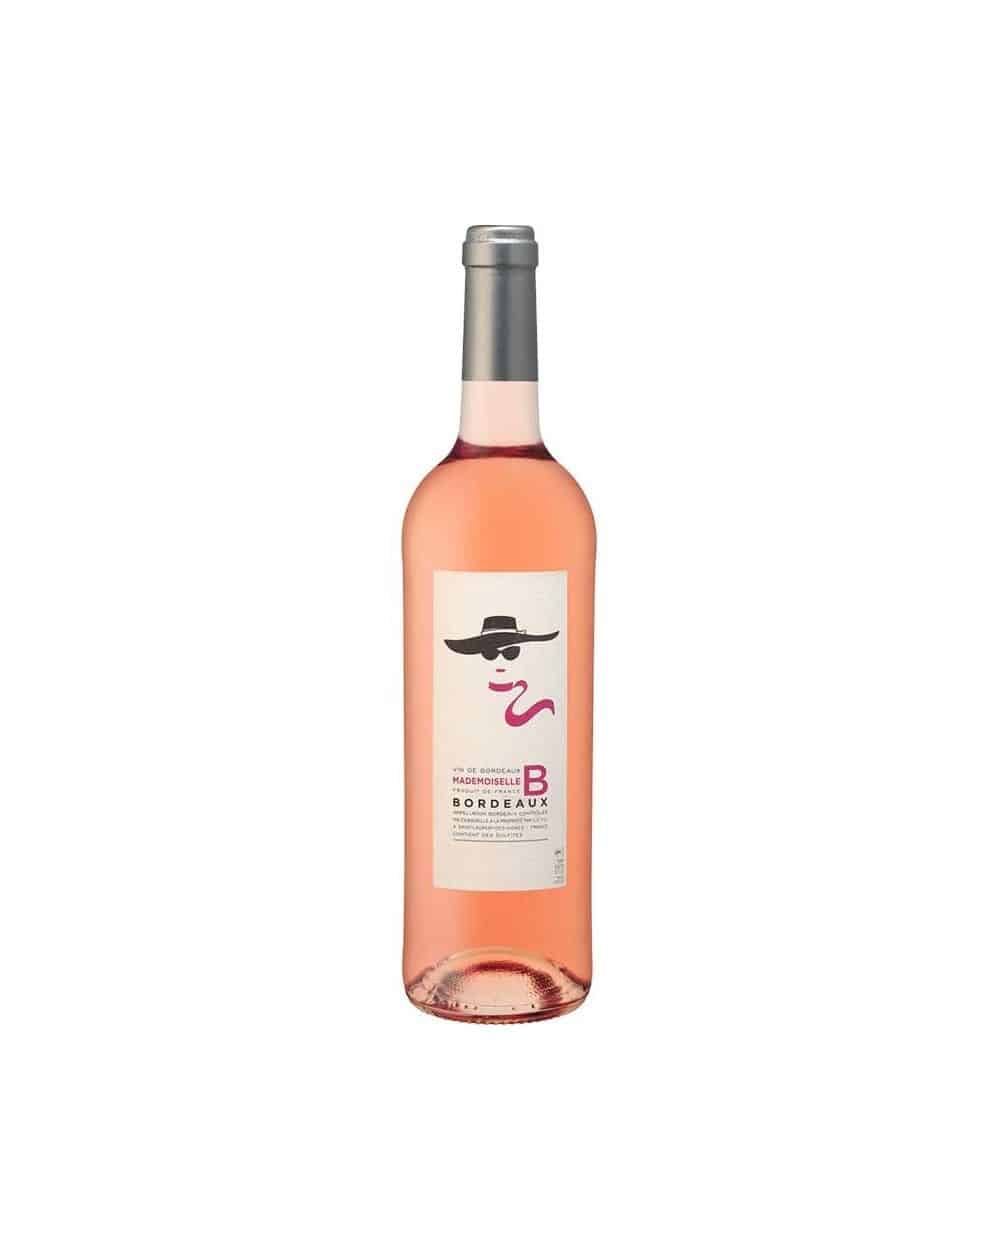 Vin Bordeaux Mademoiselle B Rosé 2015 AOC